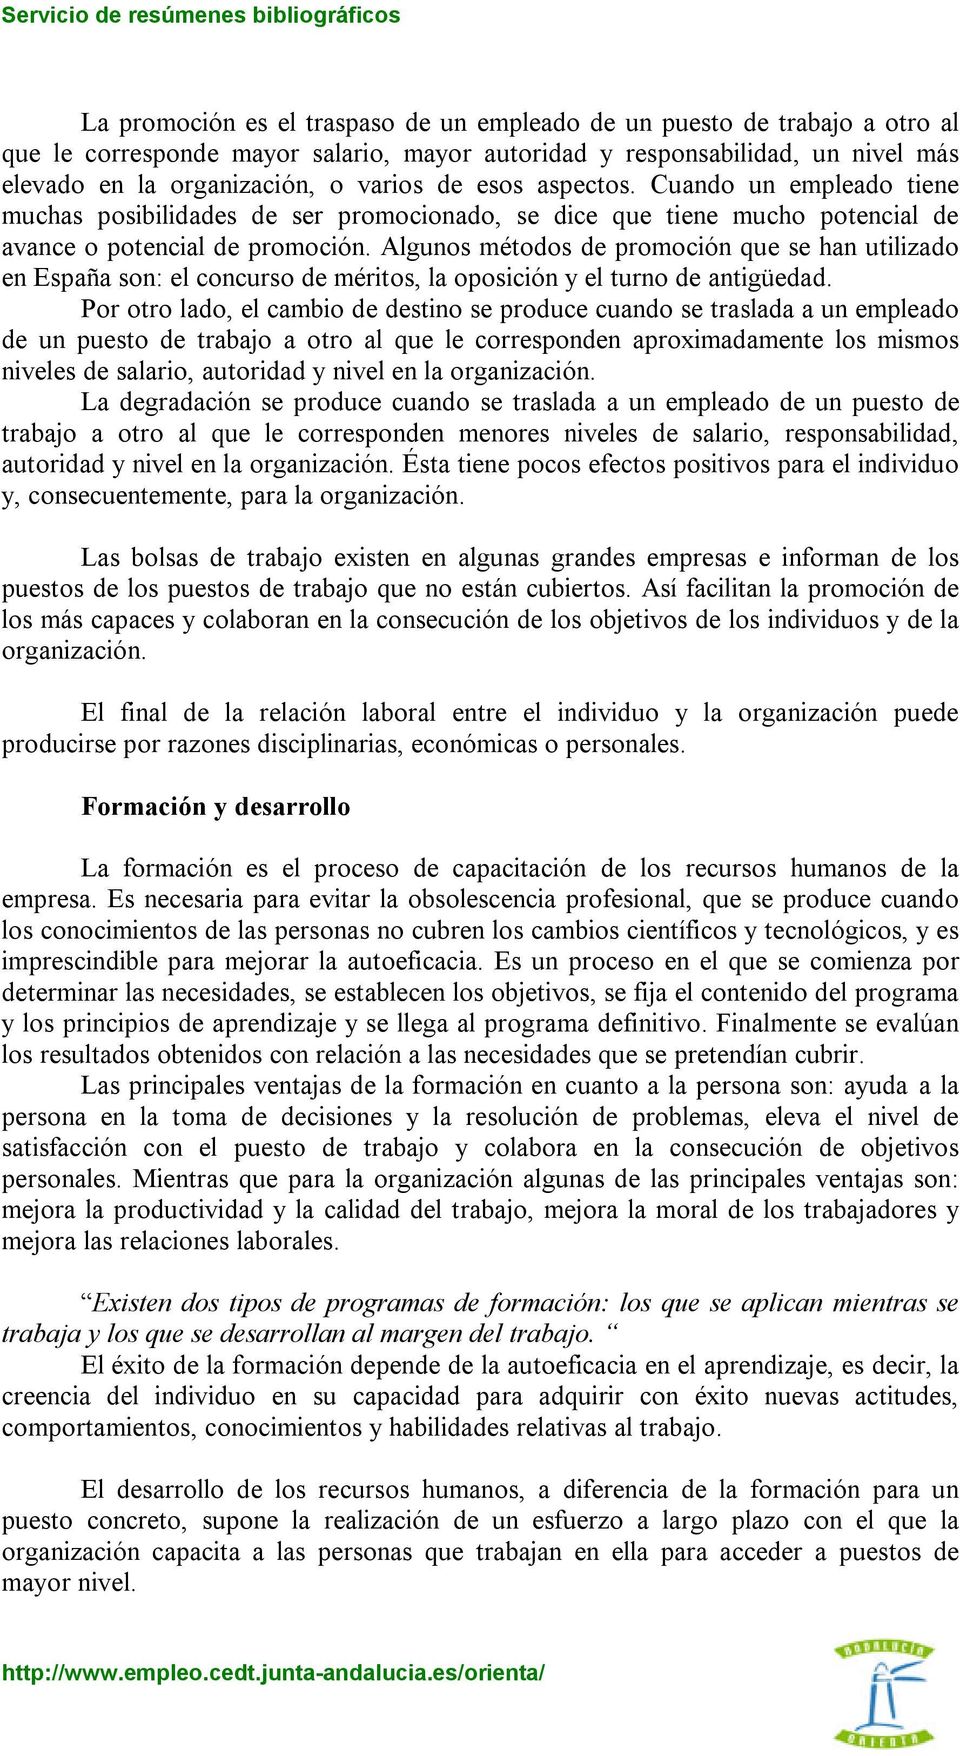 Algunos métodos de promoción que se han utilizado en España son: el concurso de méritos, la oposición y el turno de antigüedad.